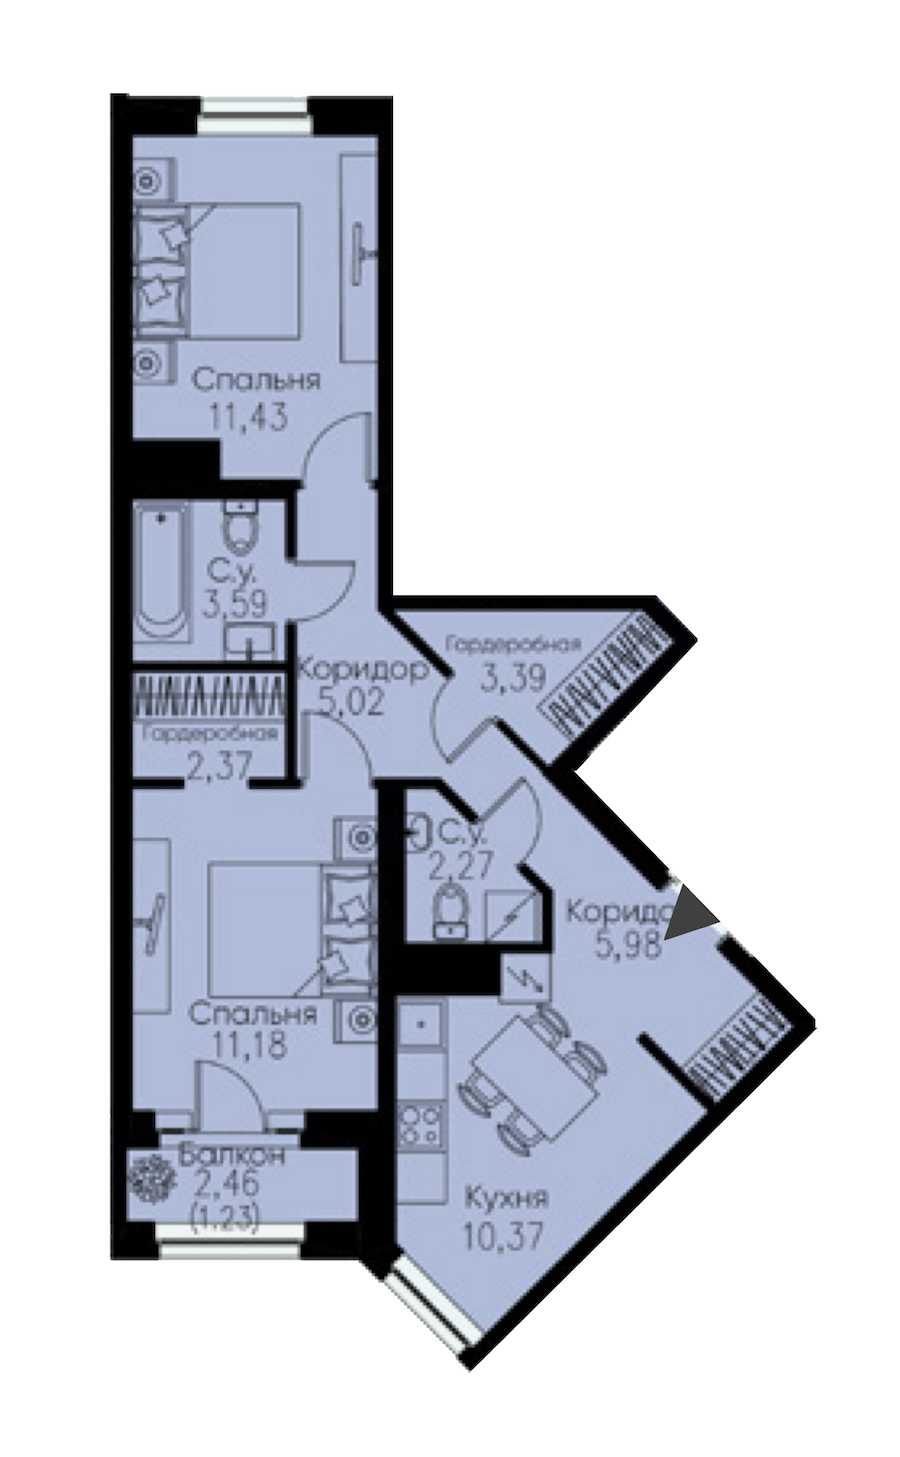 Двухкомнатная квартира в : площадь 56.83 м2 , этаж: 10 – купить в Санкт-Петербурге